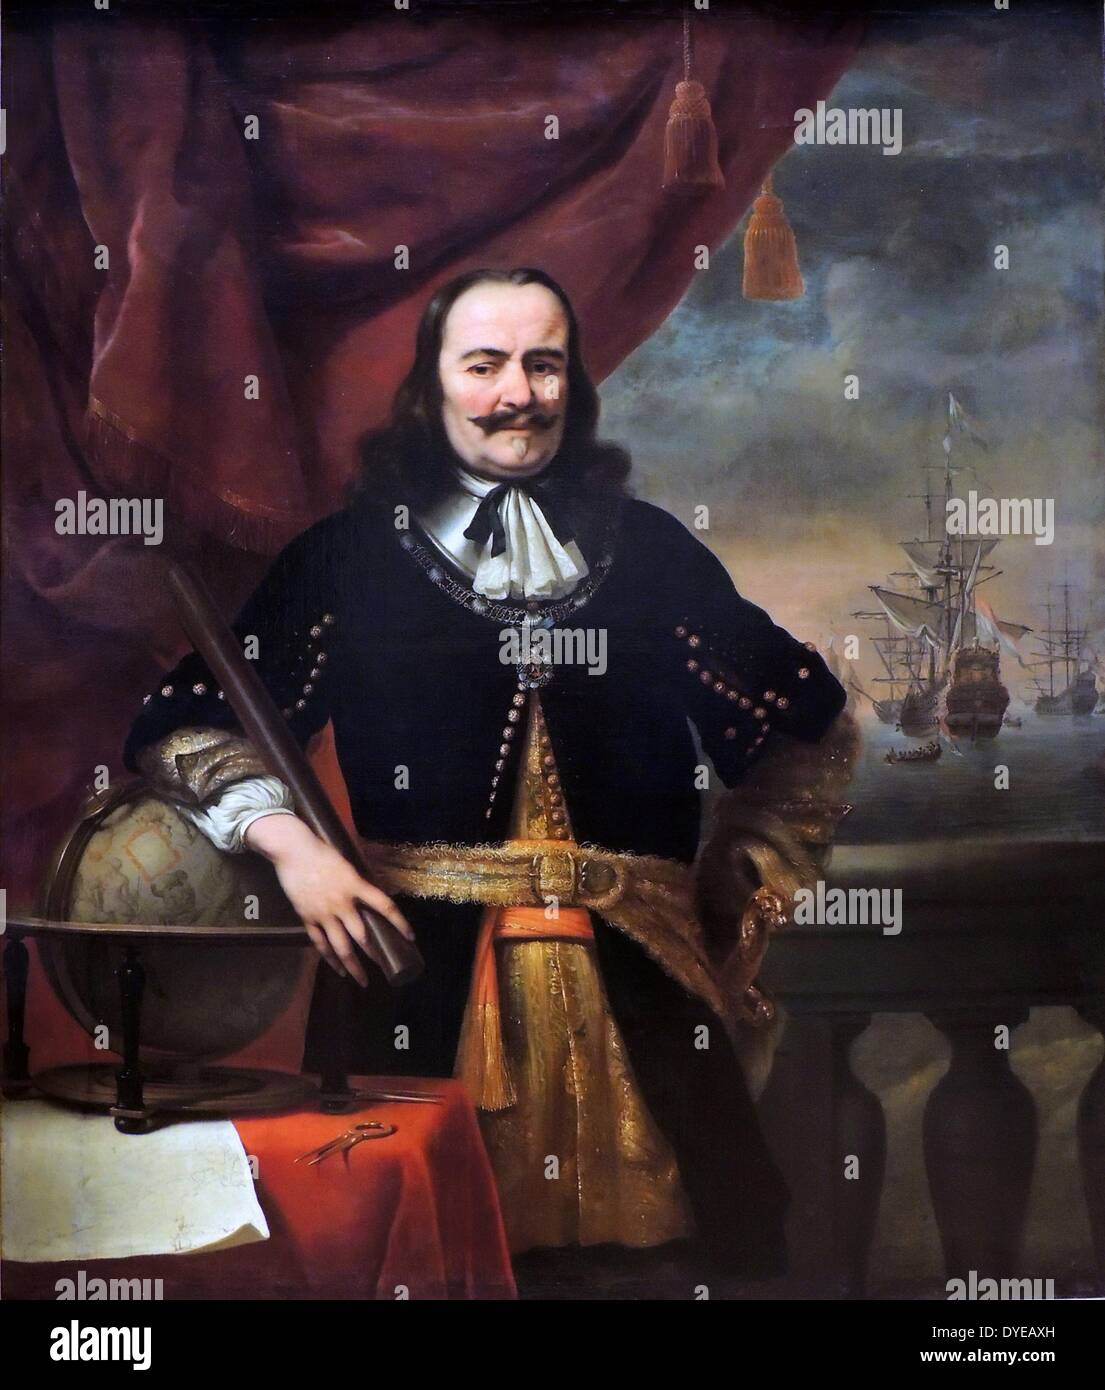 Michiel de Ruyter come Lieutenant-Admiral Ferdinand Bol (1616-1680) olio su tela, 1667. Nel 1667 Ferdinand Bol verniciati più vita-dimensioni ritratti di Michiel de Ruyter. Questi sono stati appesi nella sede centrale di tutti e cinque i admiralties olandese. Questo dipinto è andato a Middelburg, de Ruyter è lo status di eroe ha fatto di lui un uomo potente. Nel ritratto egli è riccamente vestito e tenendo premuto il suo comandante il testimone. Intorno al suo collo indossa l Ordine di San Michele, aggiudicato a lui dal re di Francia. Foto Stock